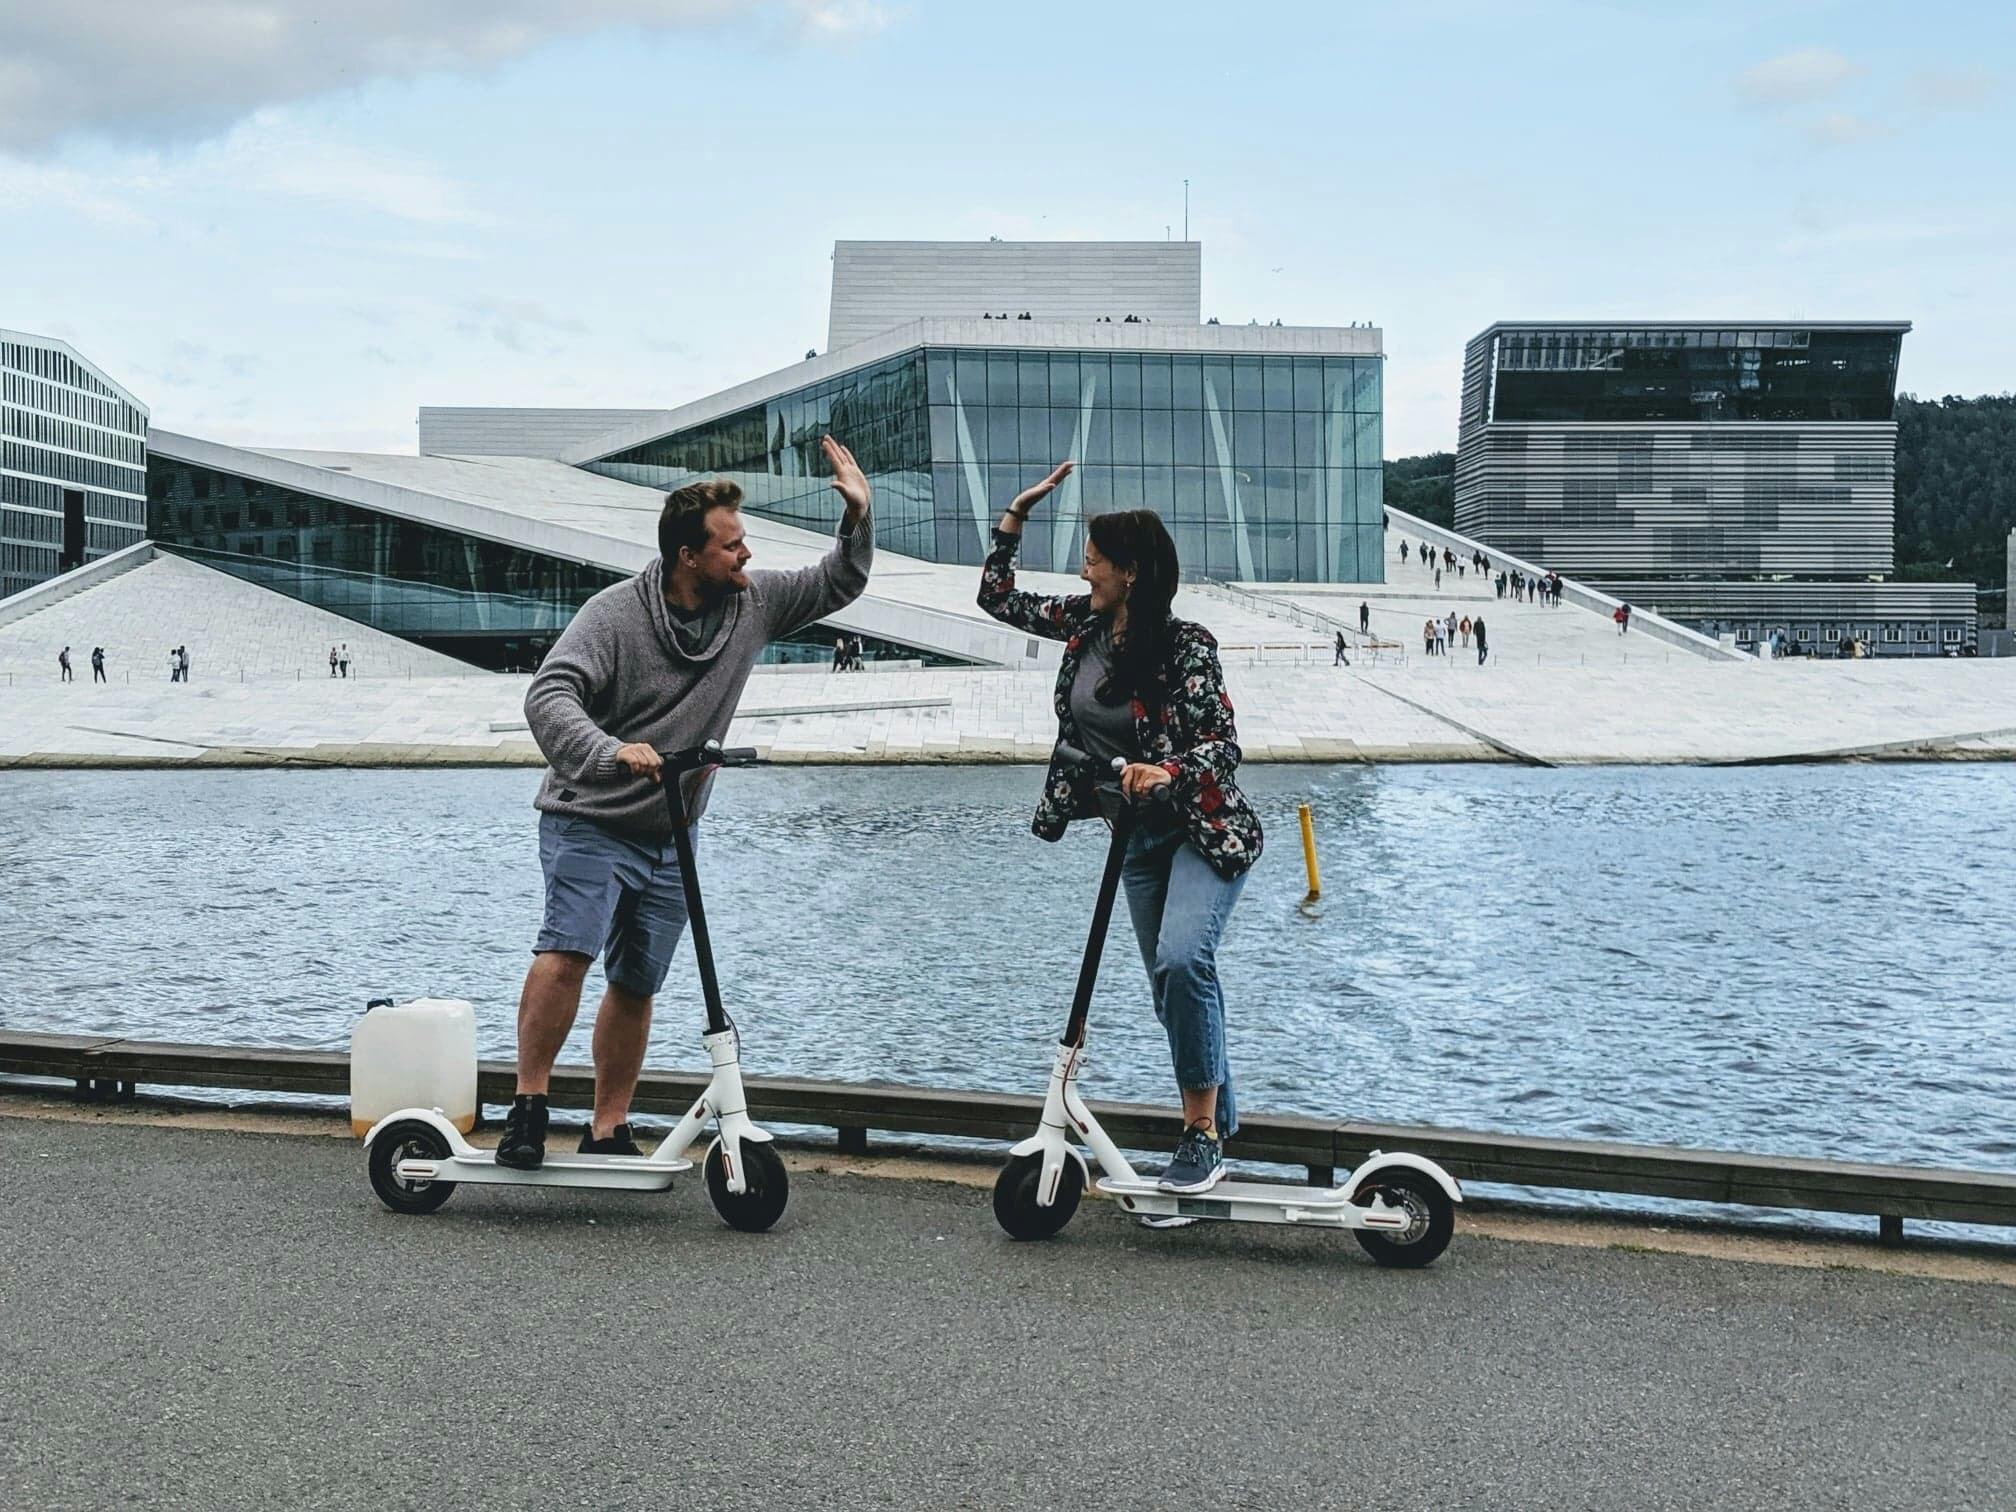 E-Scooter-Stadtrundfahrt in Oslo